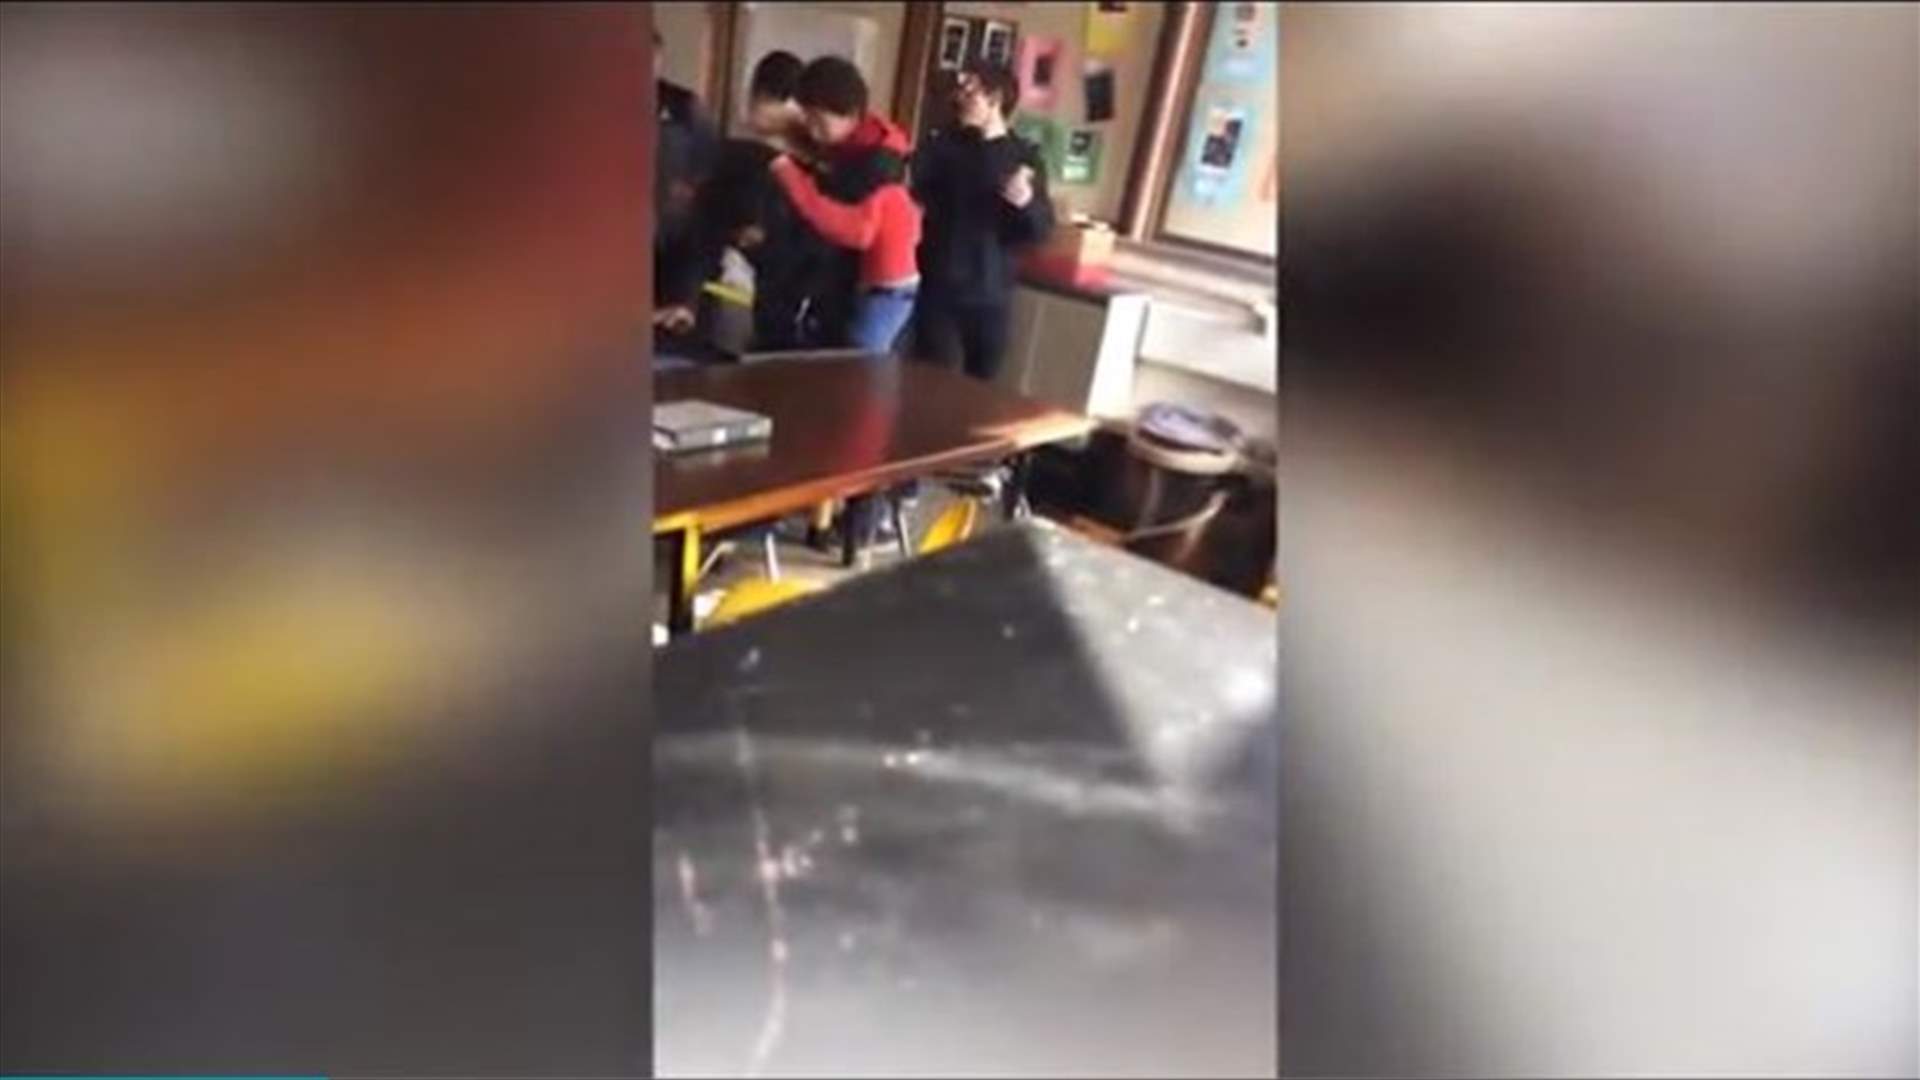 بالفيديو: تلميذ يضرب زميله... و المعلّمة هي السبب!